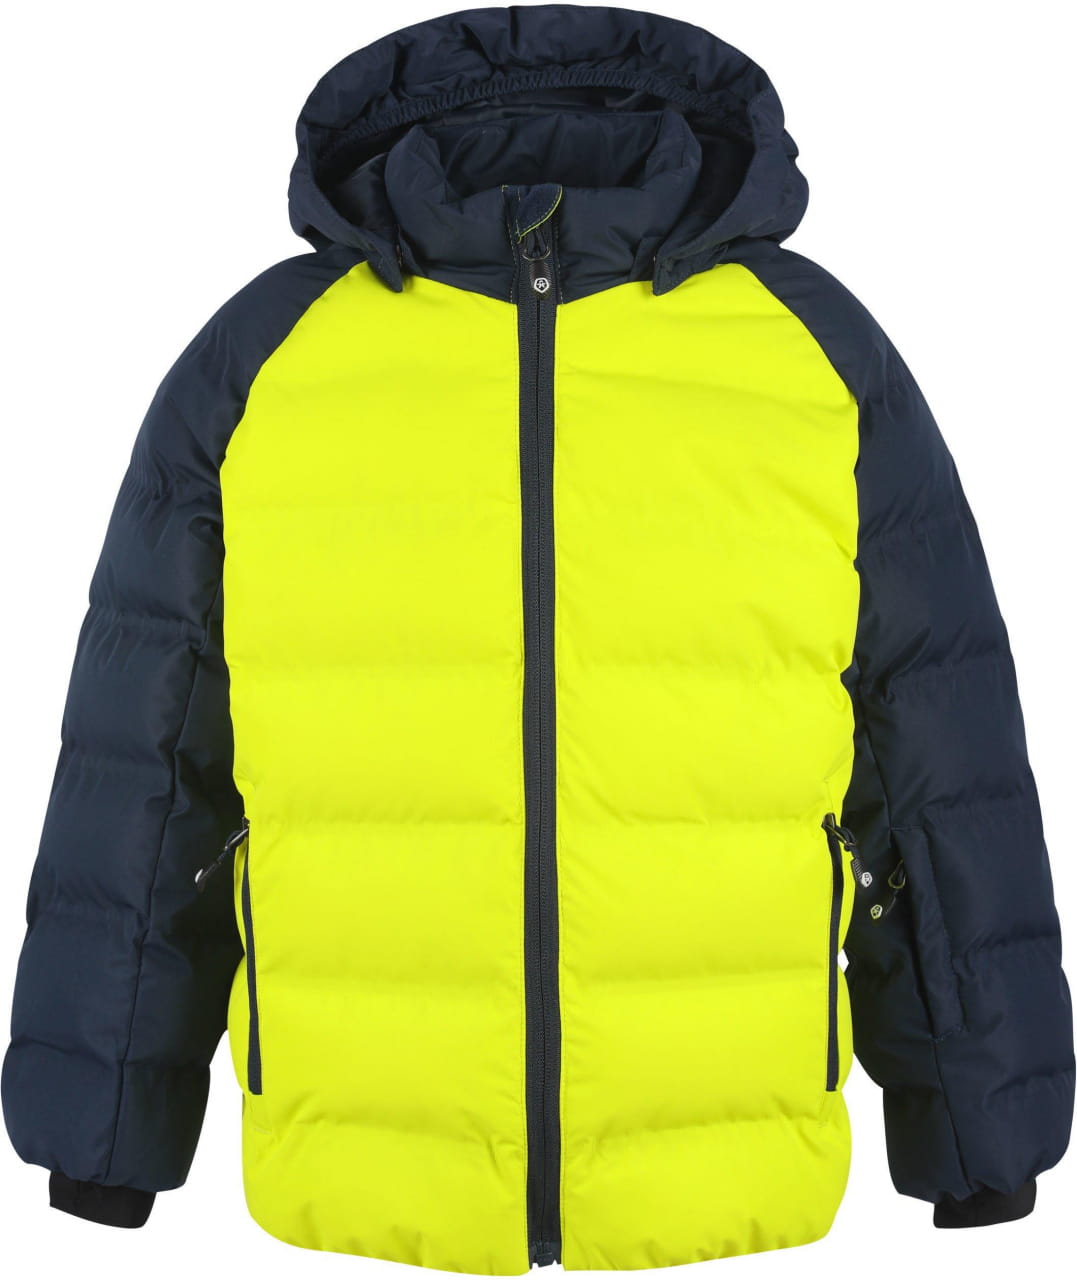 Detská zimná bunda Color Kids Ski Jacket Quilted